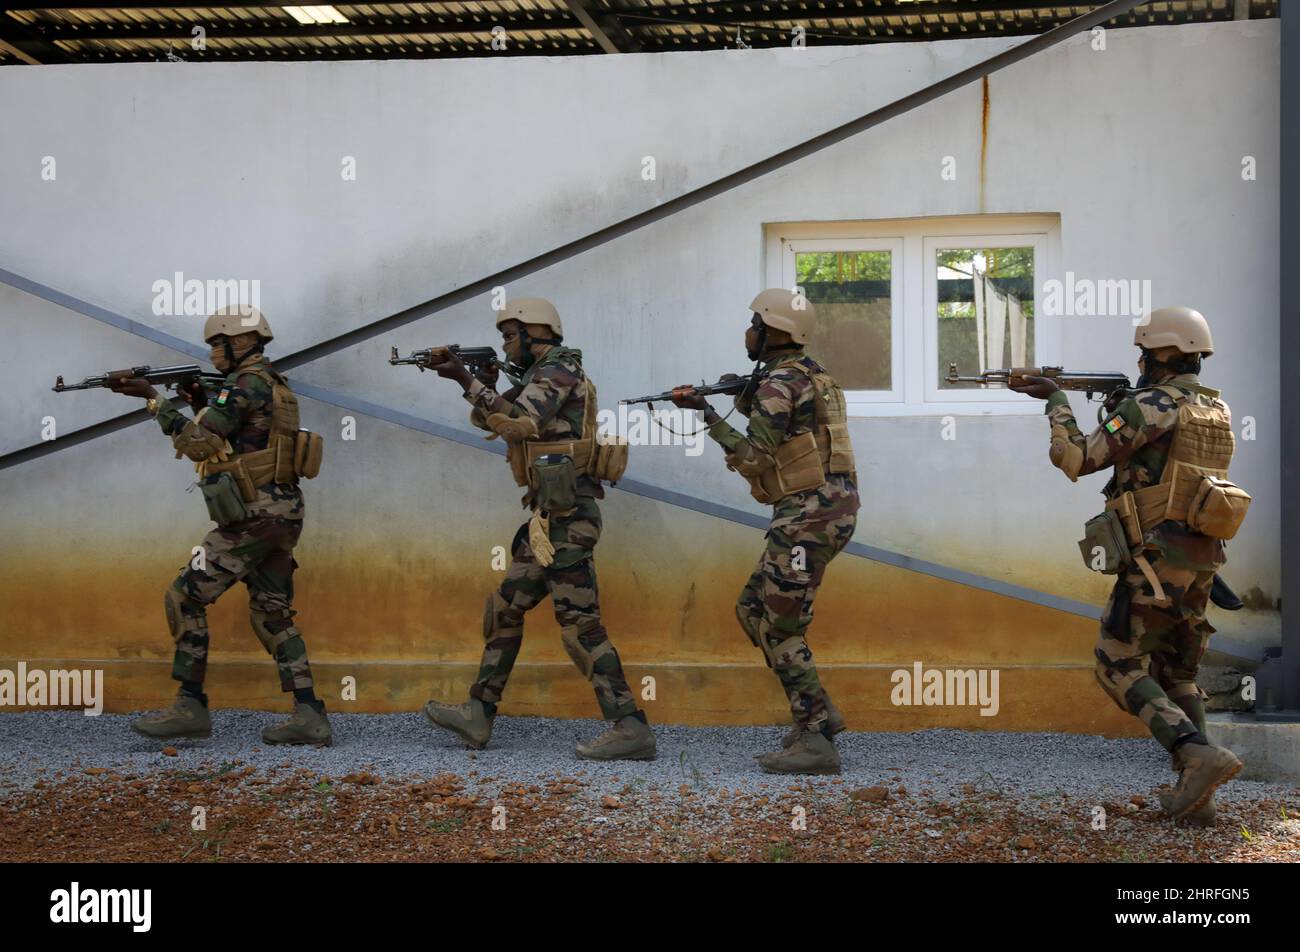 Soldados de las Fuerzas Armadas Nigerianas durante el entrenamiento de combate en un cuarto cercano junto a las Fuerzas Especiales francesas durante el ejercicio Flintlock 2022 19 de febrero de 2022 cerca de Abidjan, Costa de Marfil. Foto de stock